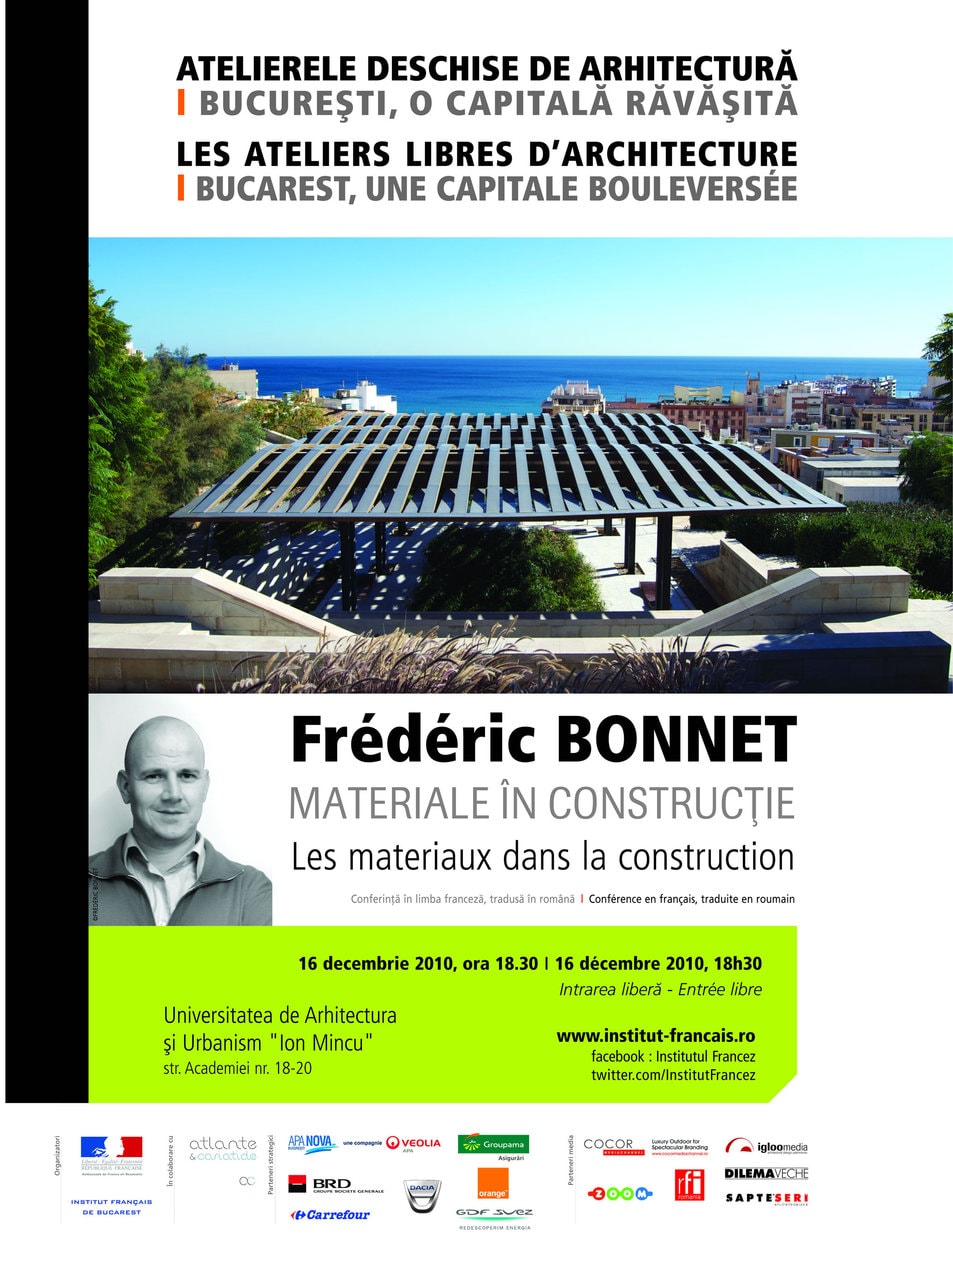 Frédéric Bonnet. Materiale în construcţie